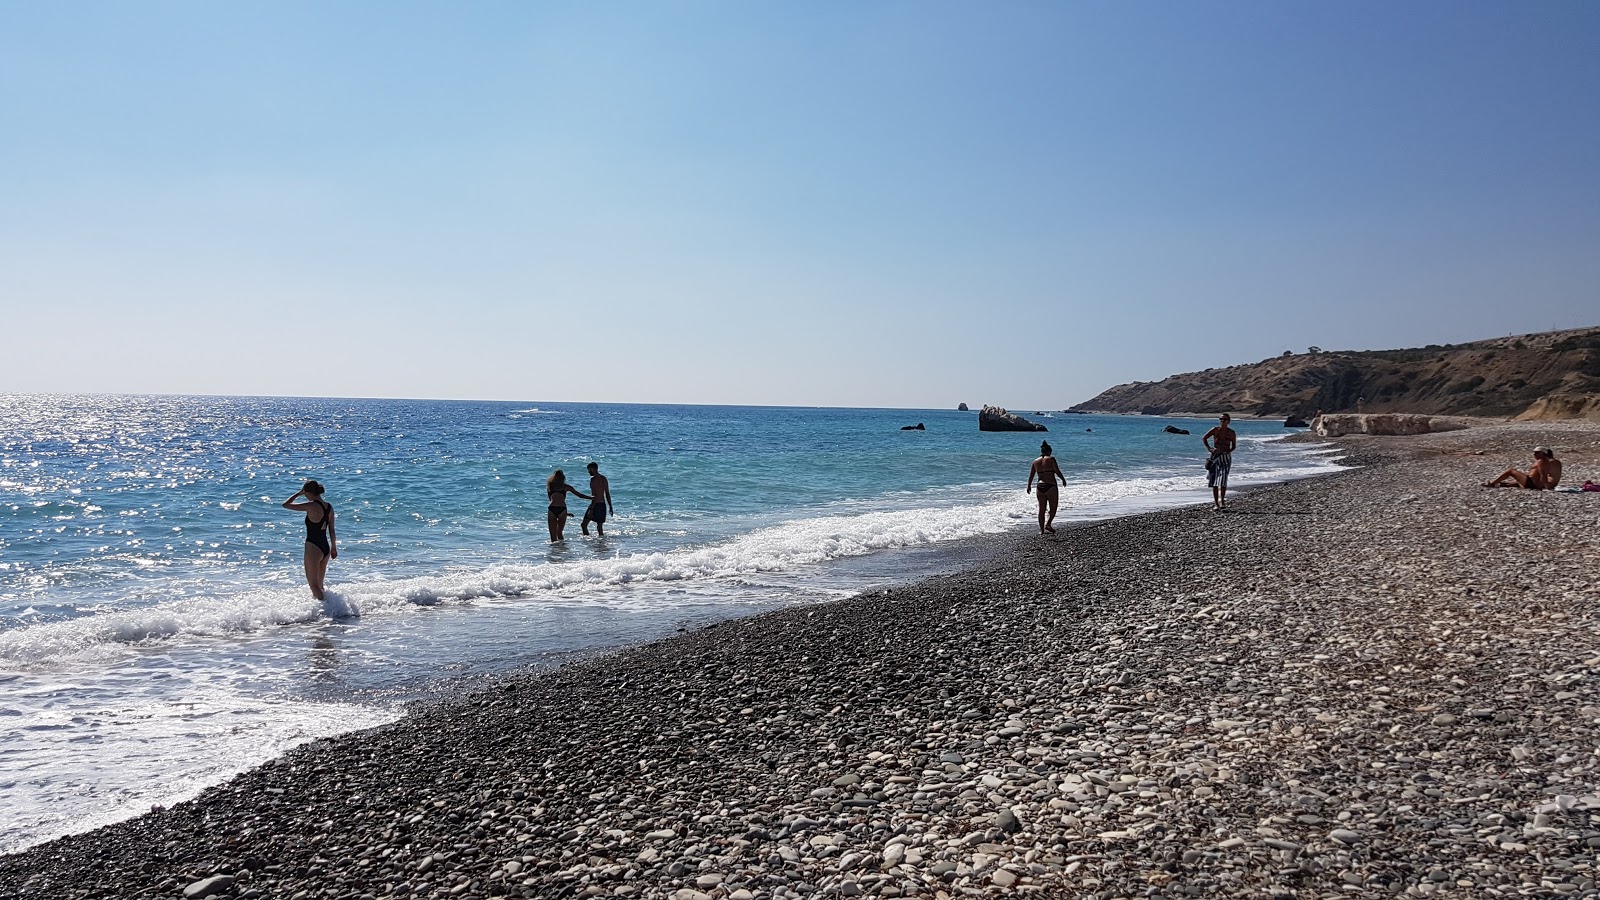 Foto von Aphrodite's rock beach von Klippen umgeben